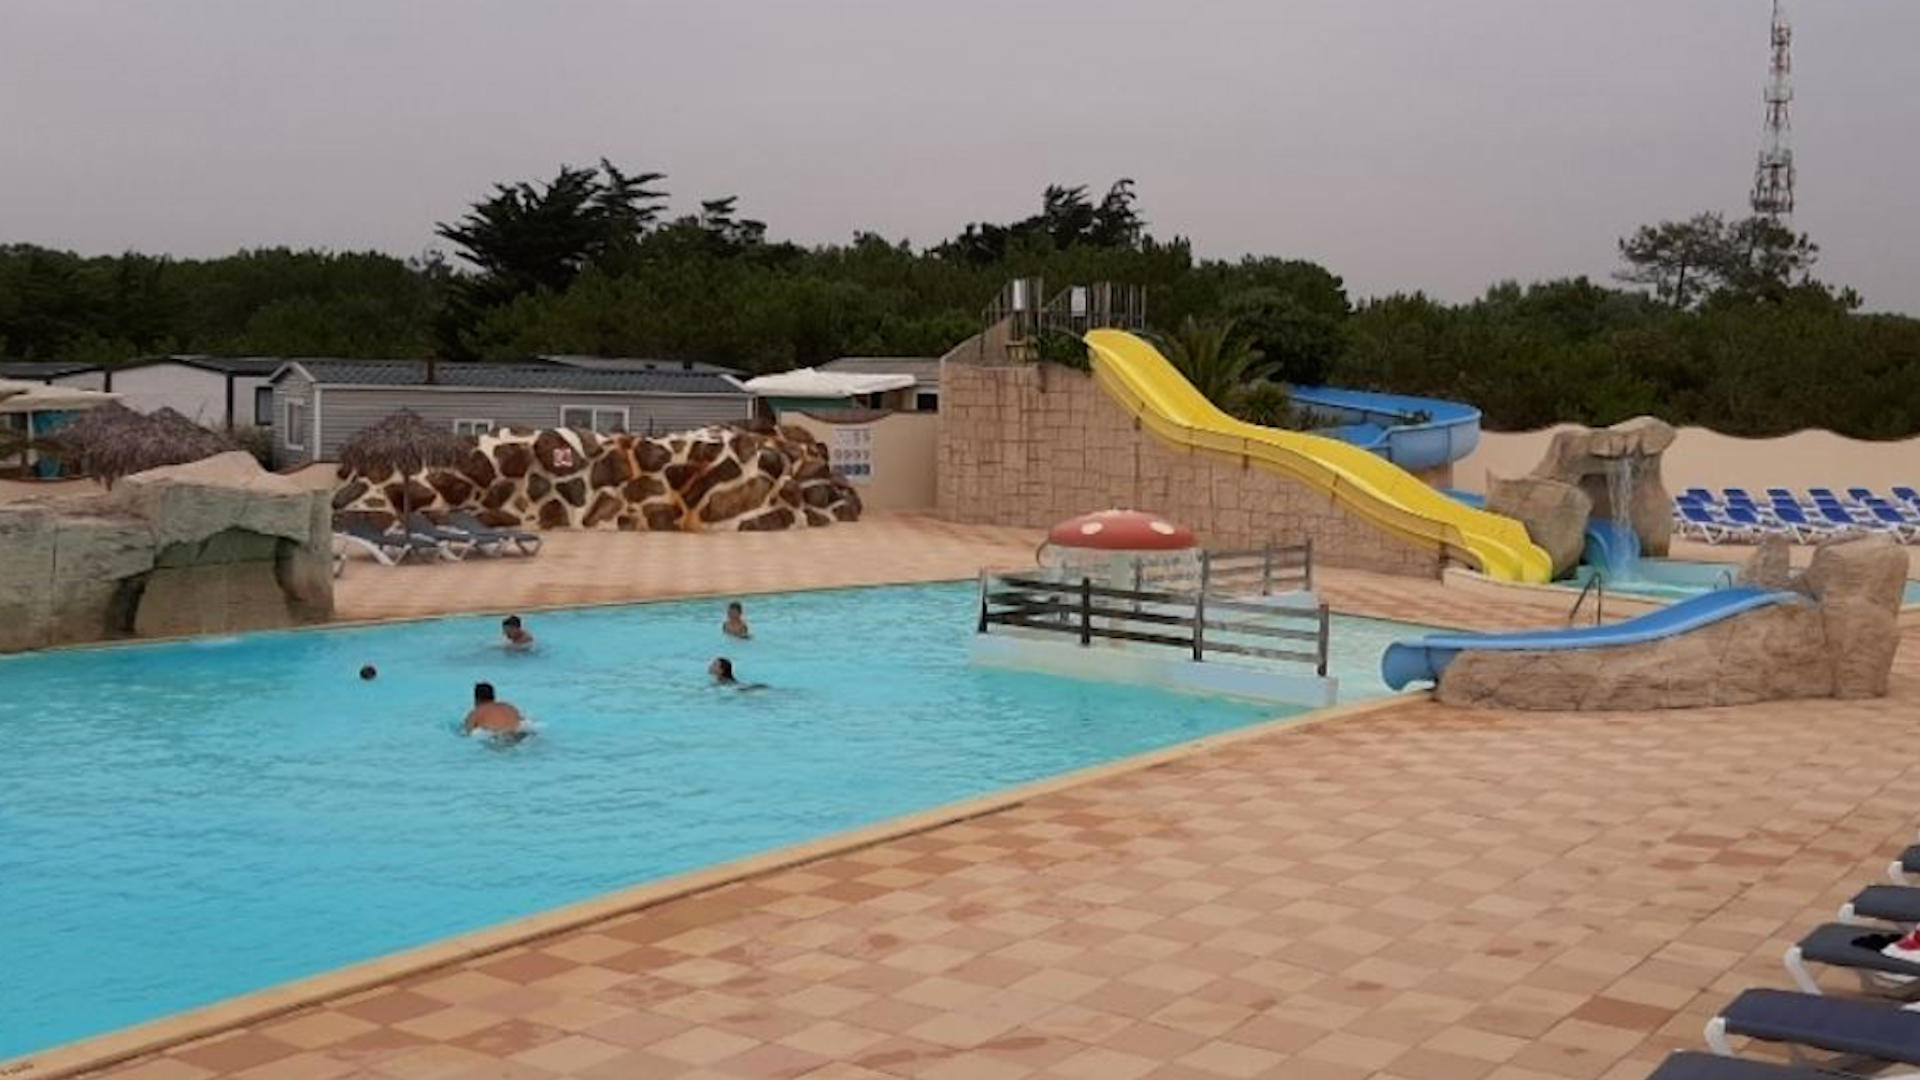 Achtjährige ertrinkt - Haare von Pool-Pumpe angesaugt Urlaubsdrama auf Campingplatz in Frankreich